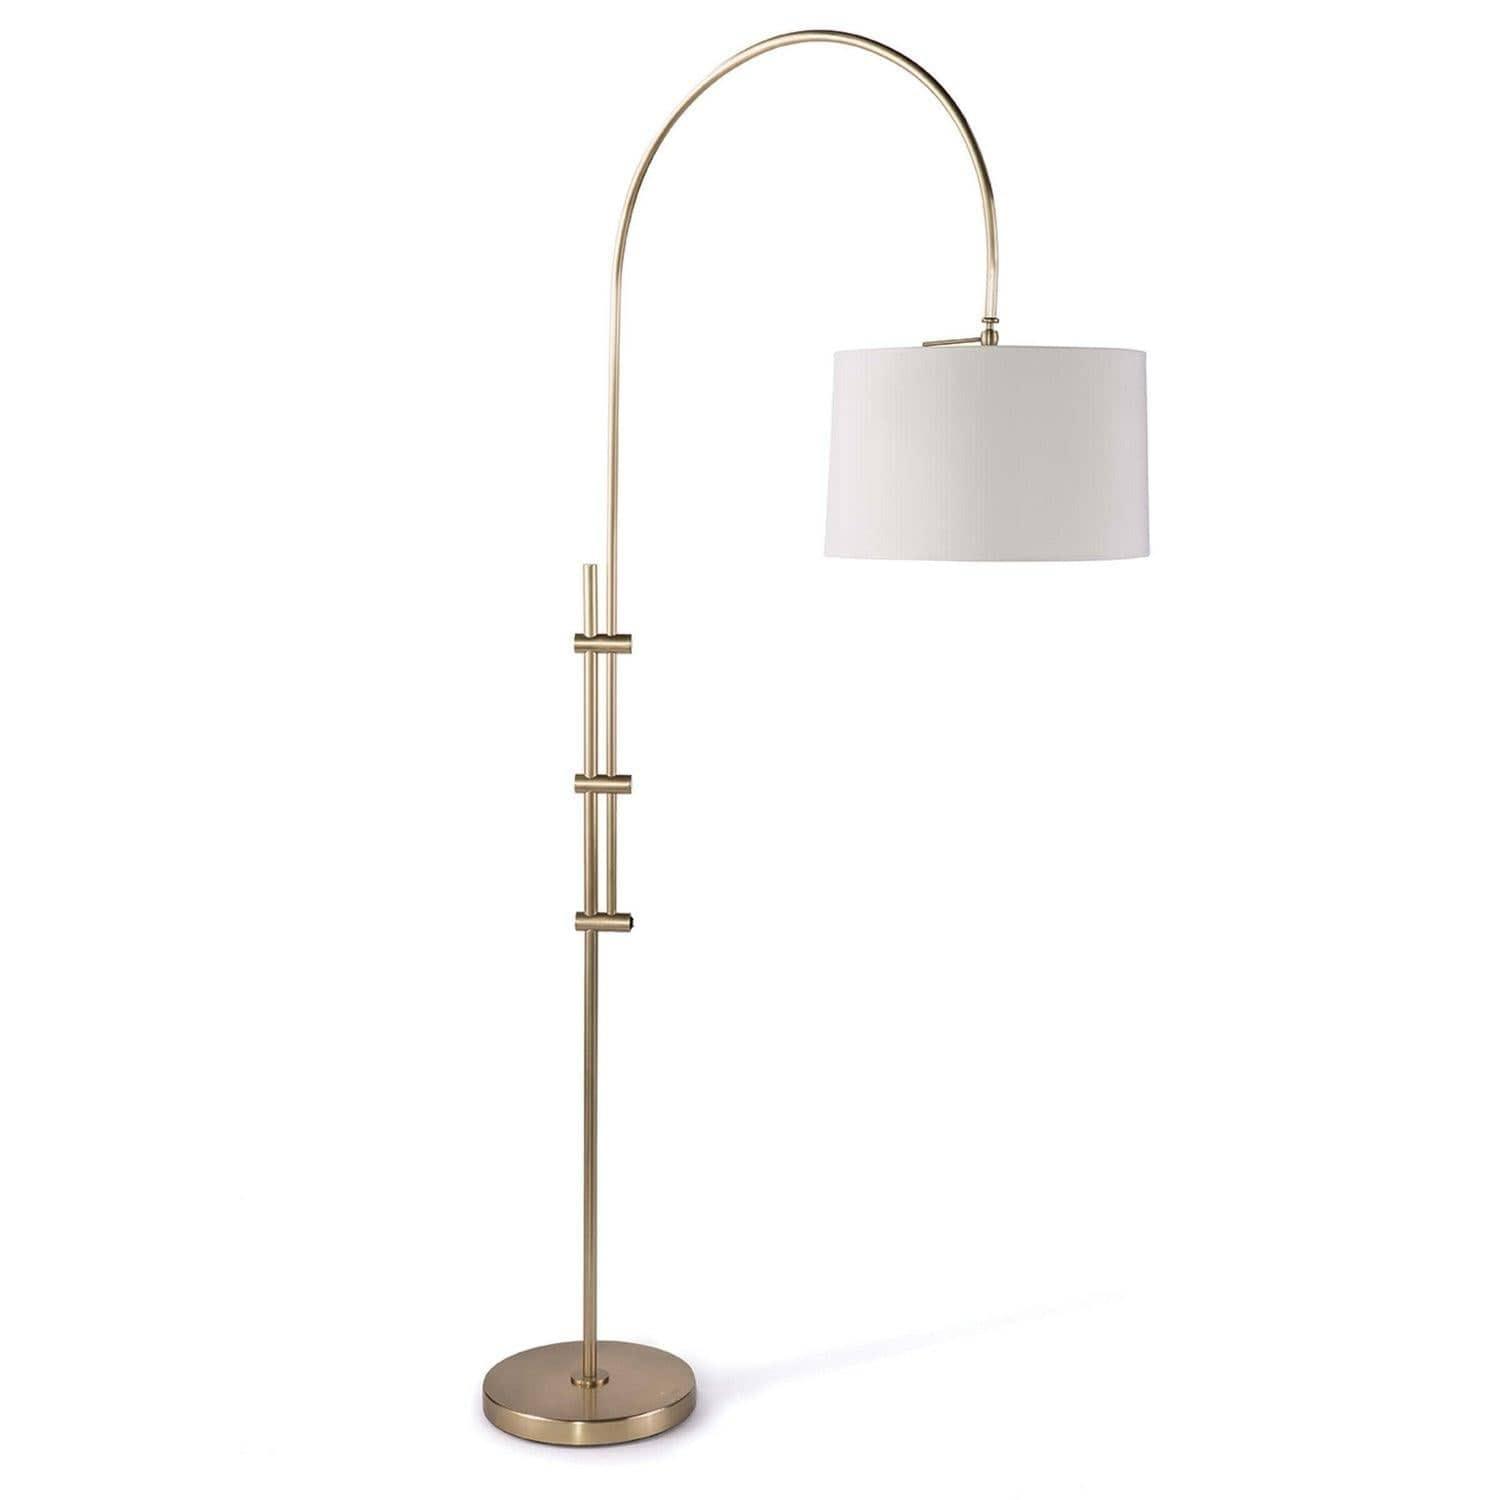 Regina Andrew - Arc Floor Lamp - 14-1004NB | Montreal Lighting & Hardware